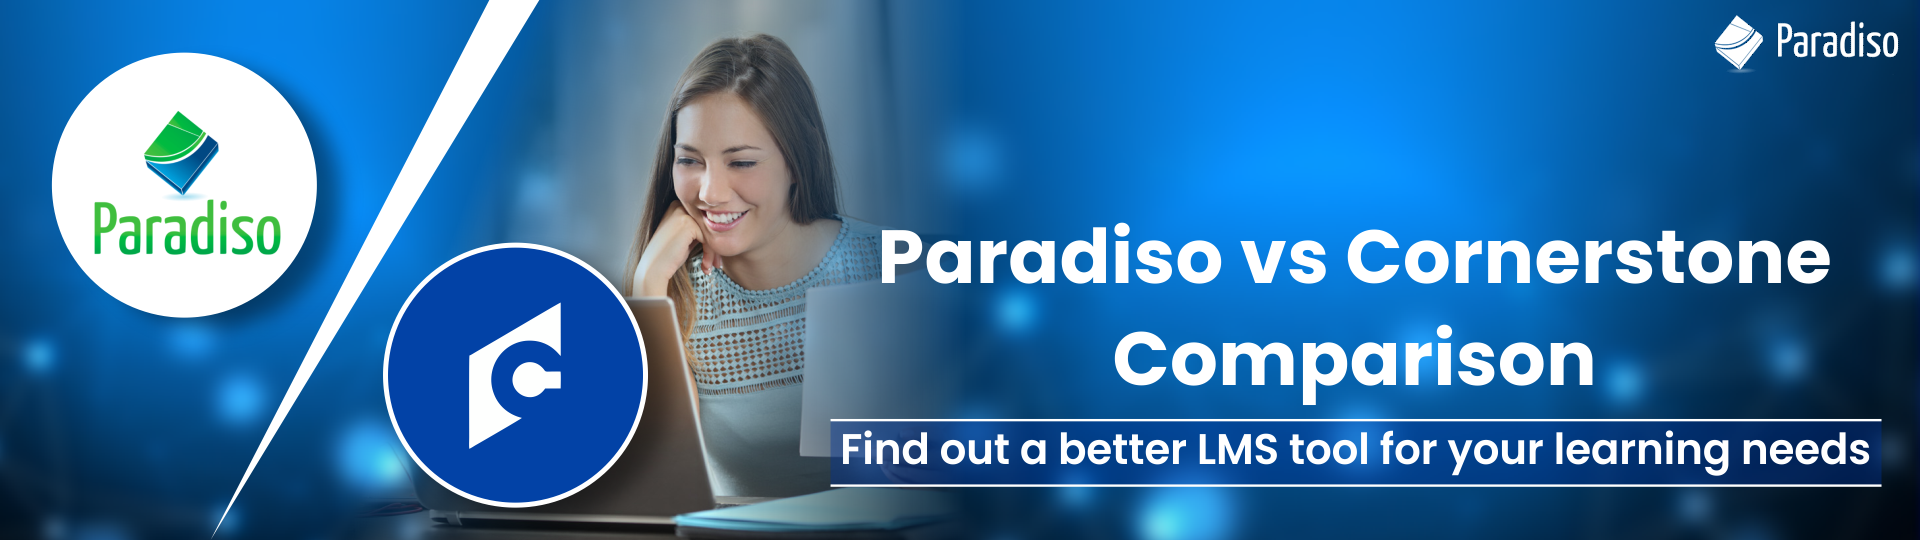 Paradiso and Cornerstone comparison